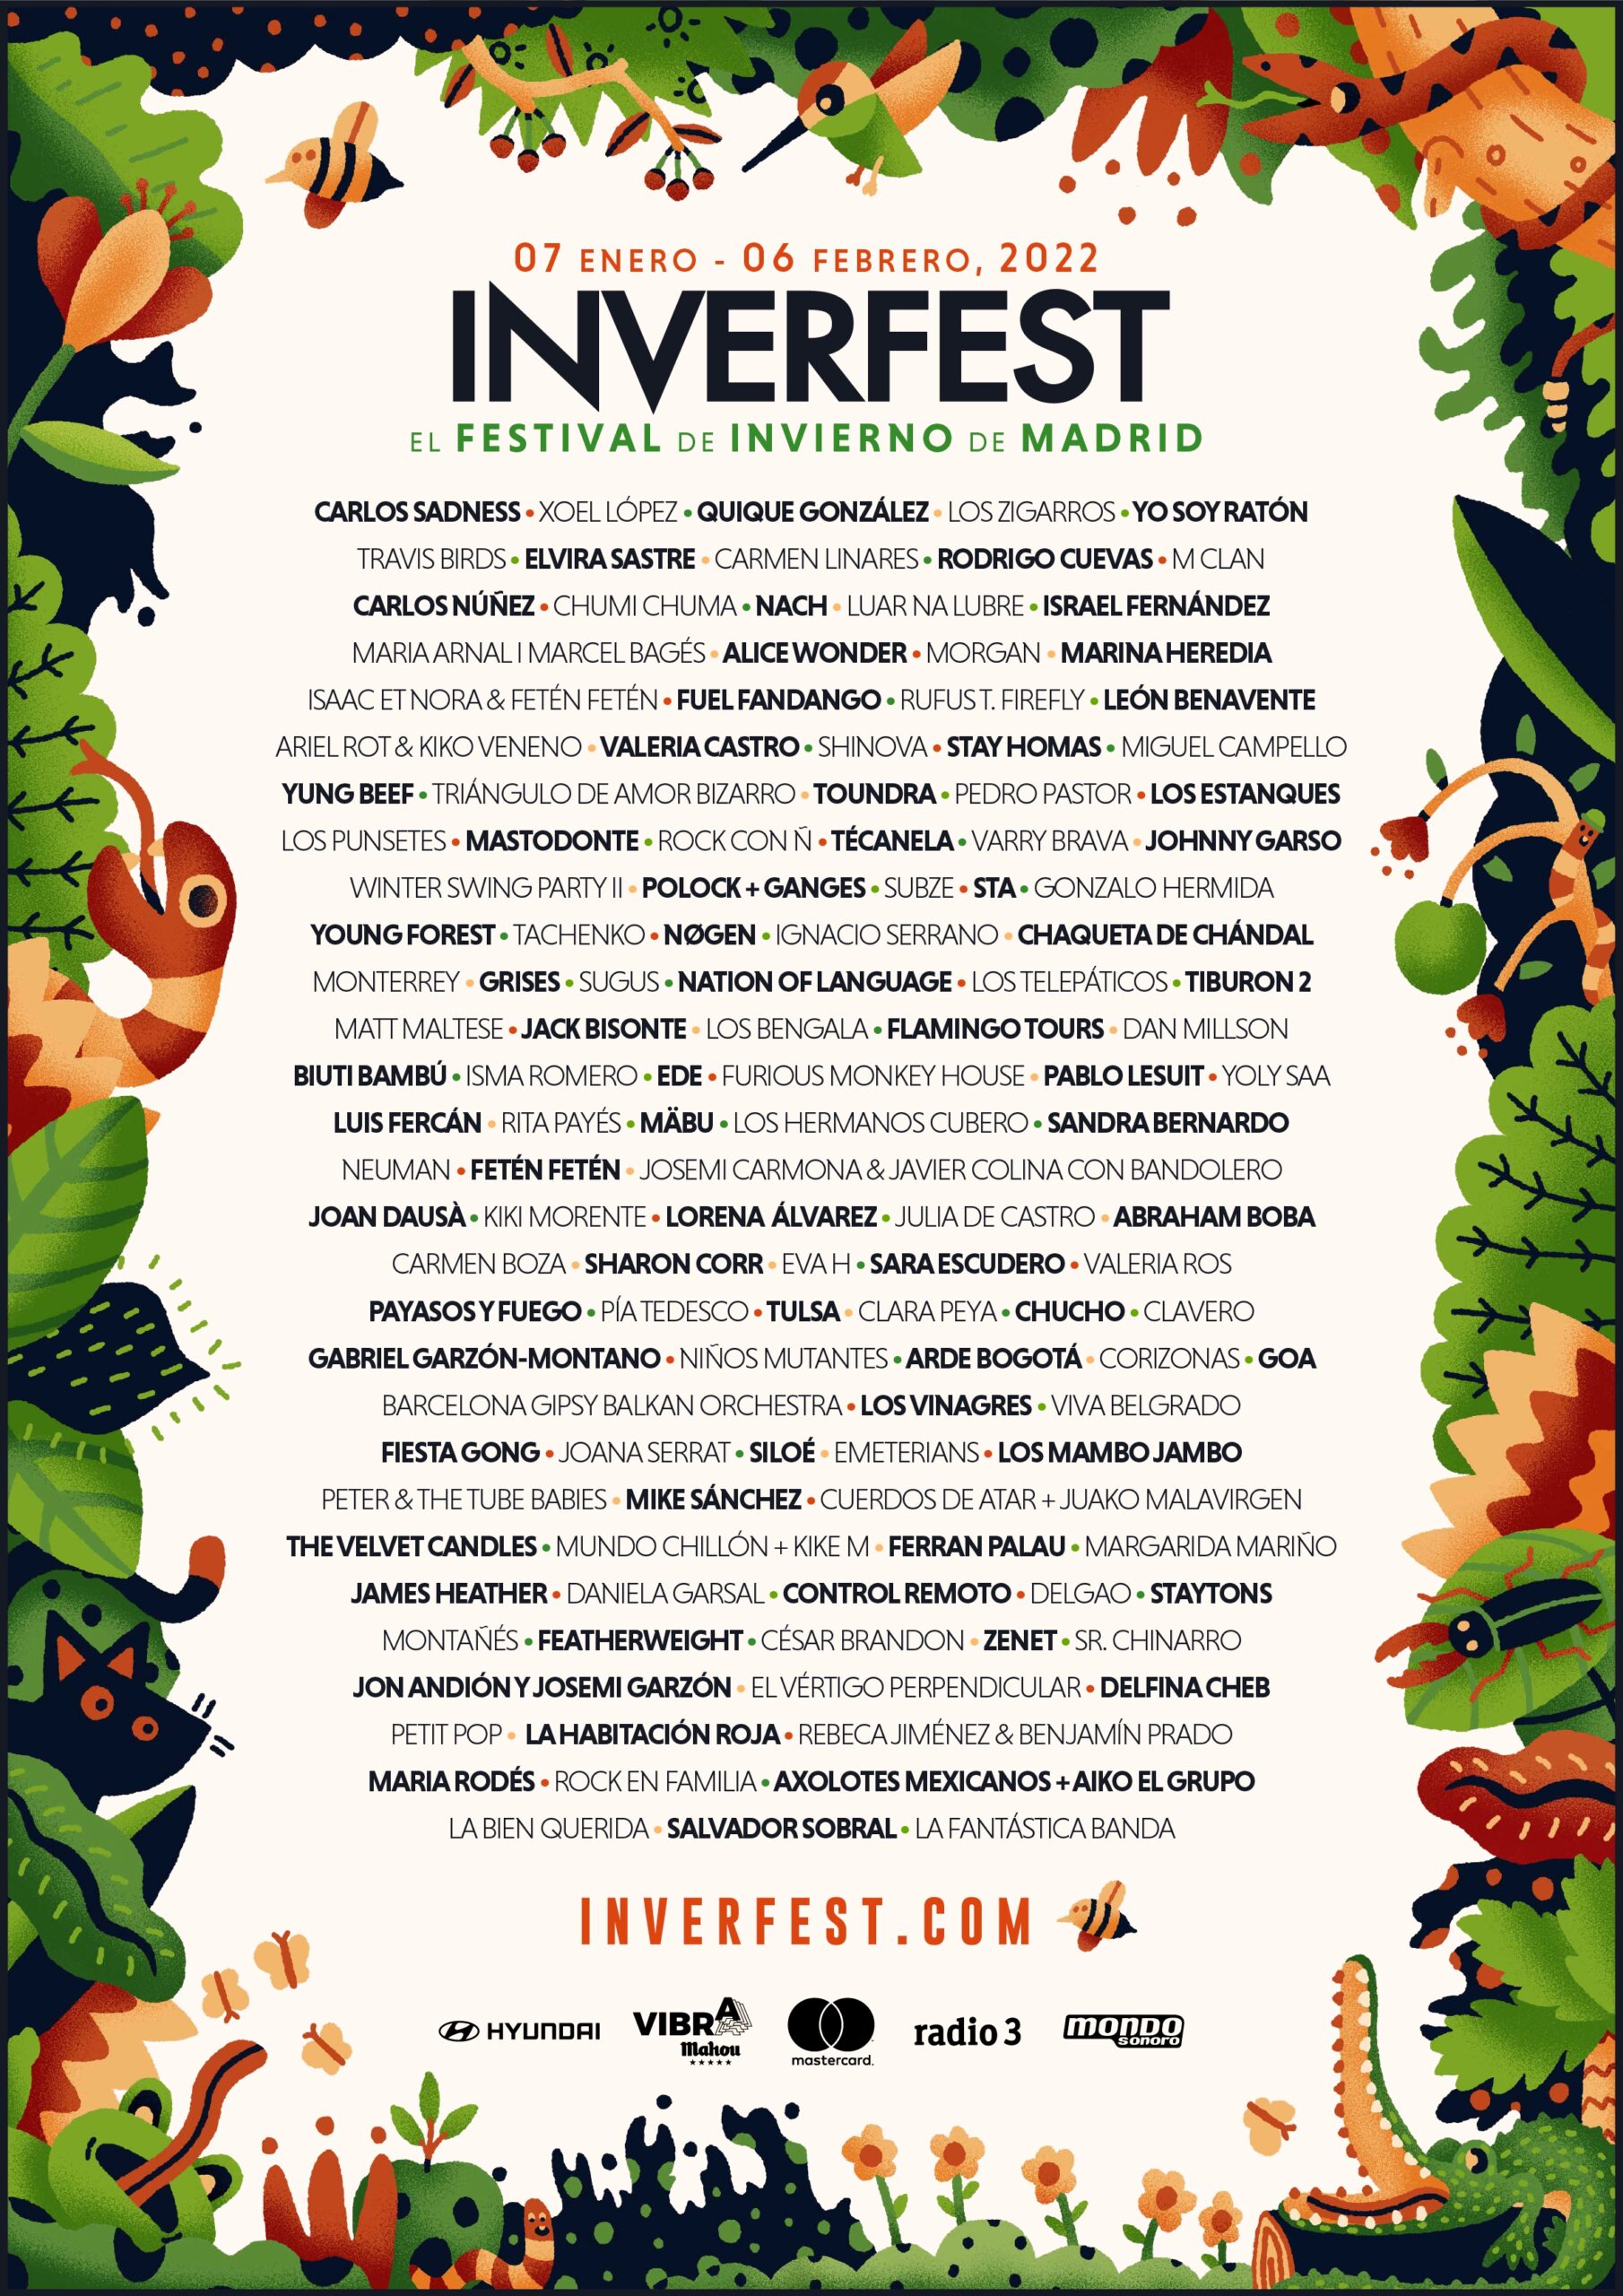 Cartel del Inverfest, del 6 de enero al 7 de febrero en Madrid